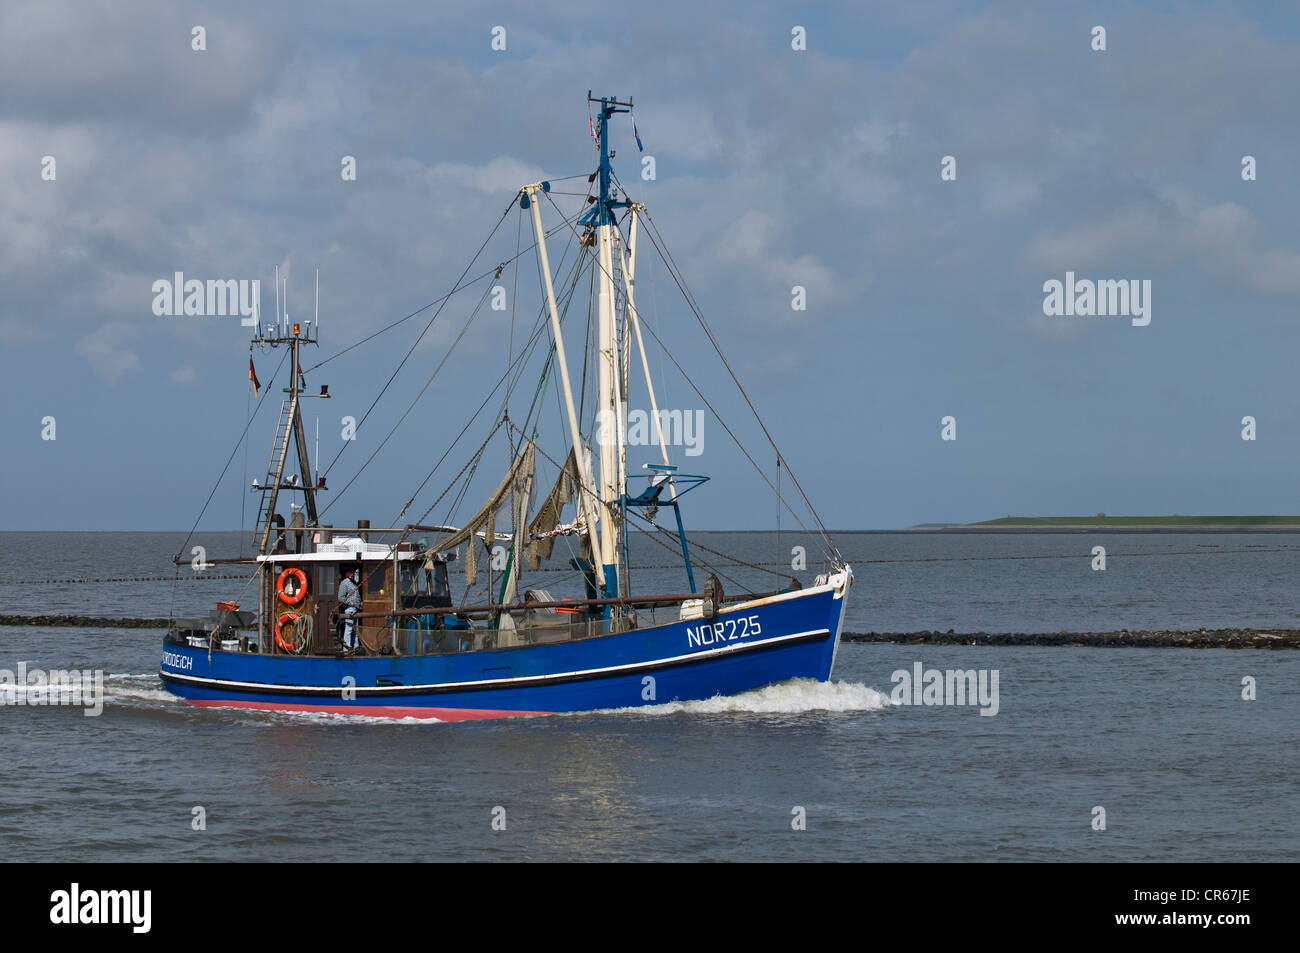 Barco de pesca del cangrejo azul, ni 225, regresando al puerto de Norddeich después de la pesca, del Mar de Wadden de Baja Sajonia Foto de stock